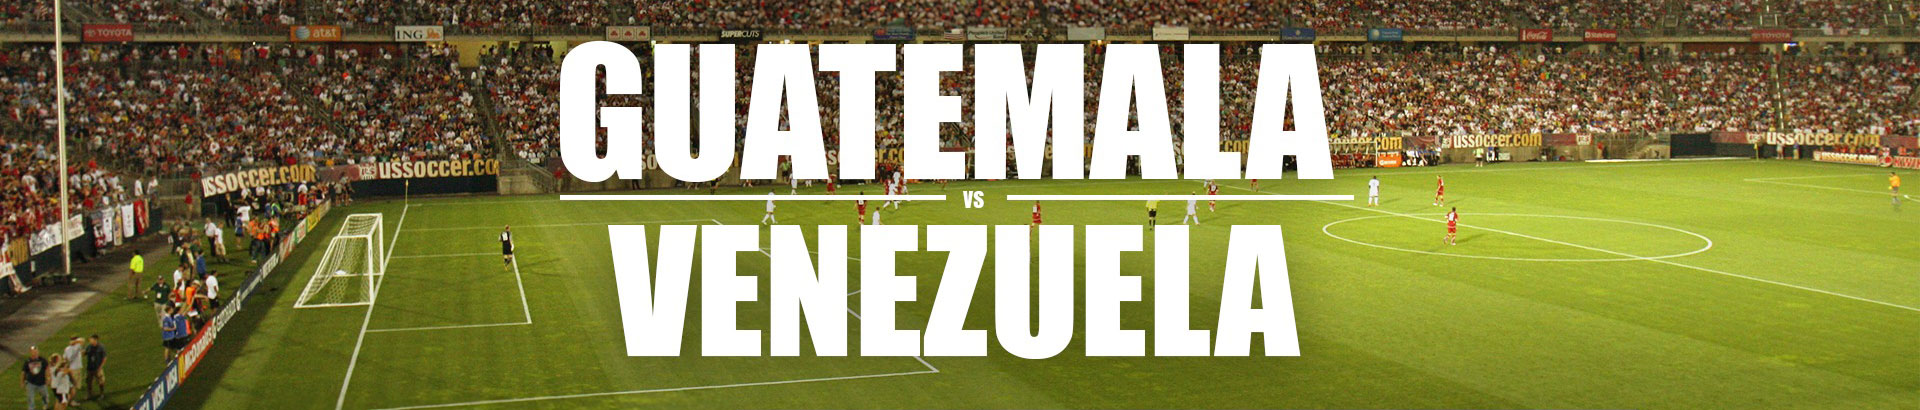 Guatemala vs. Venezuela